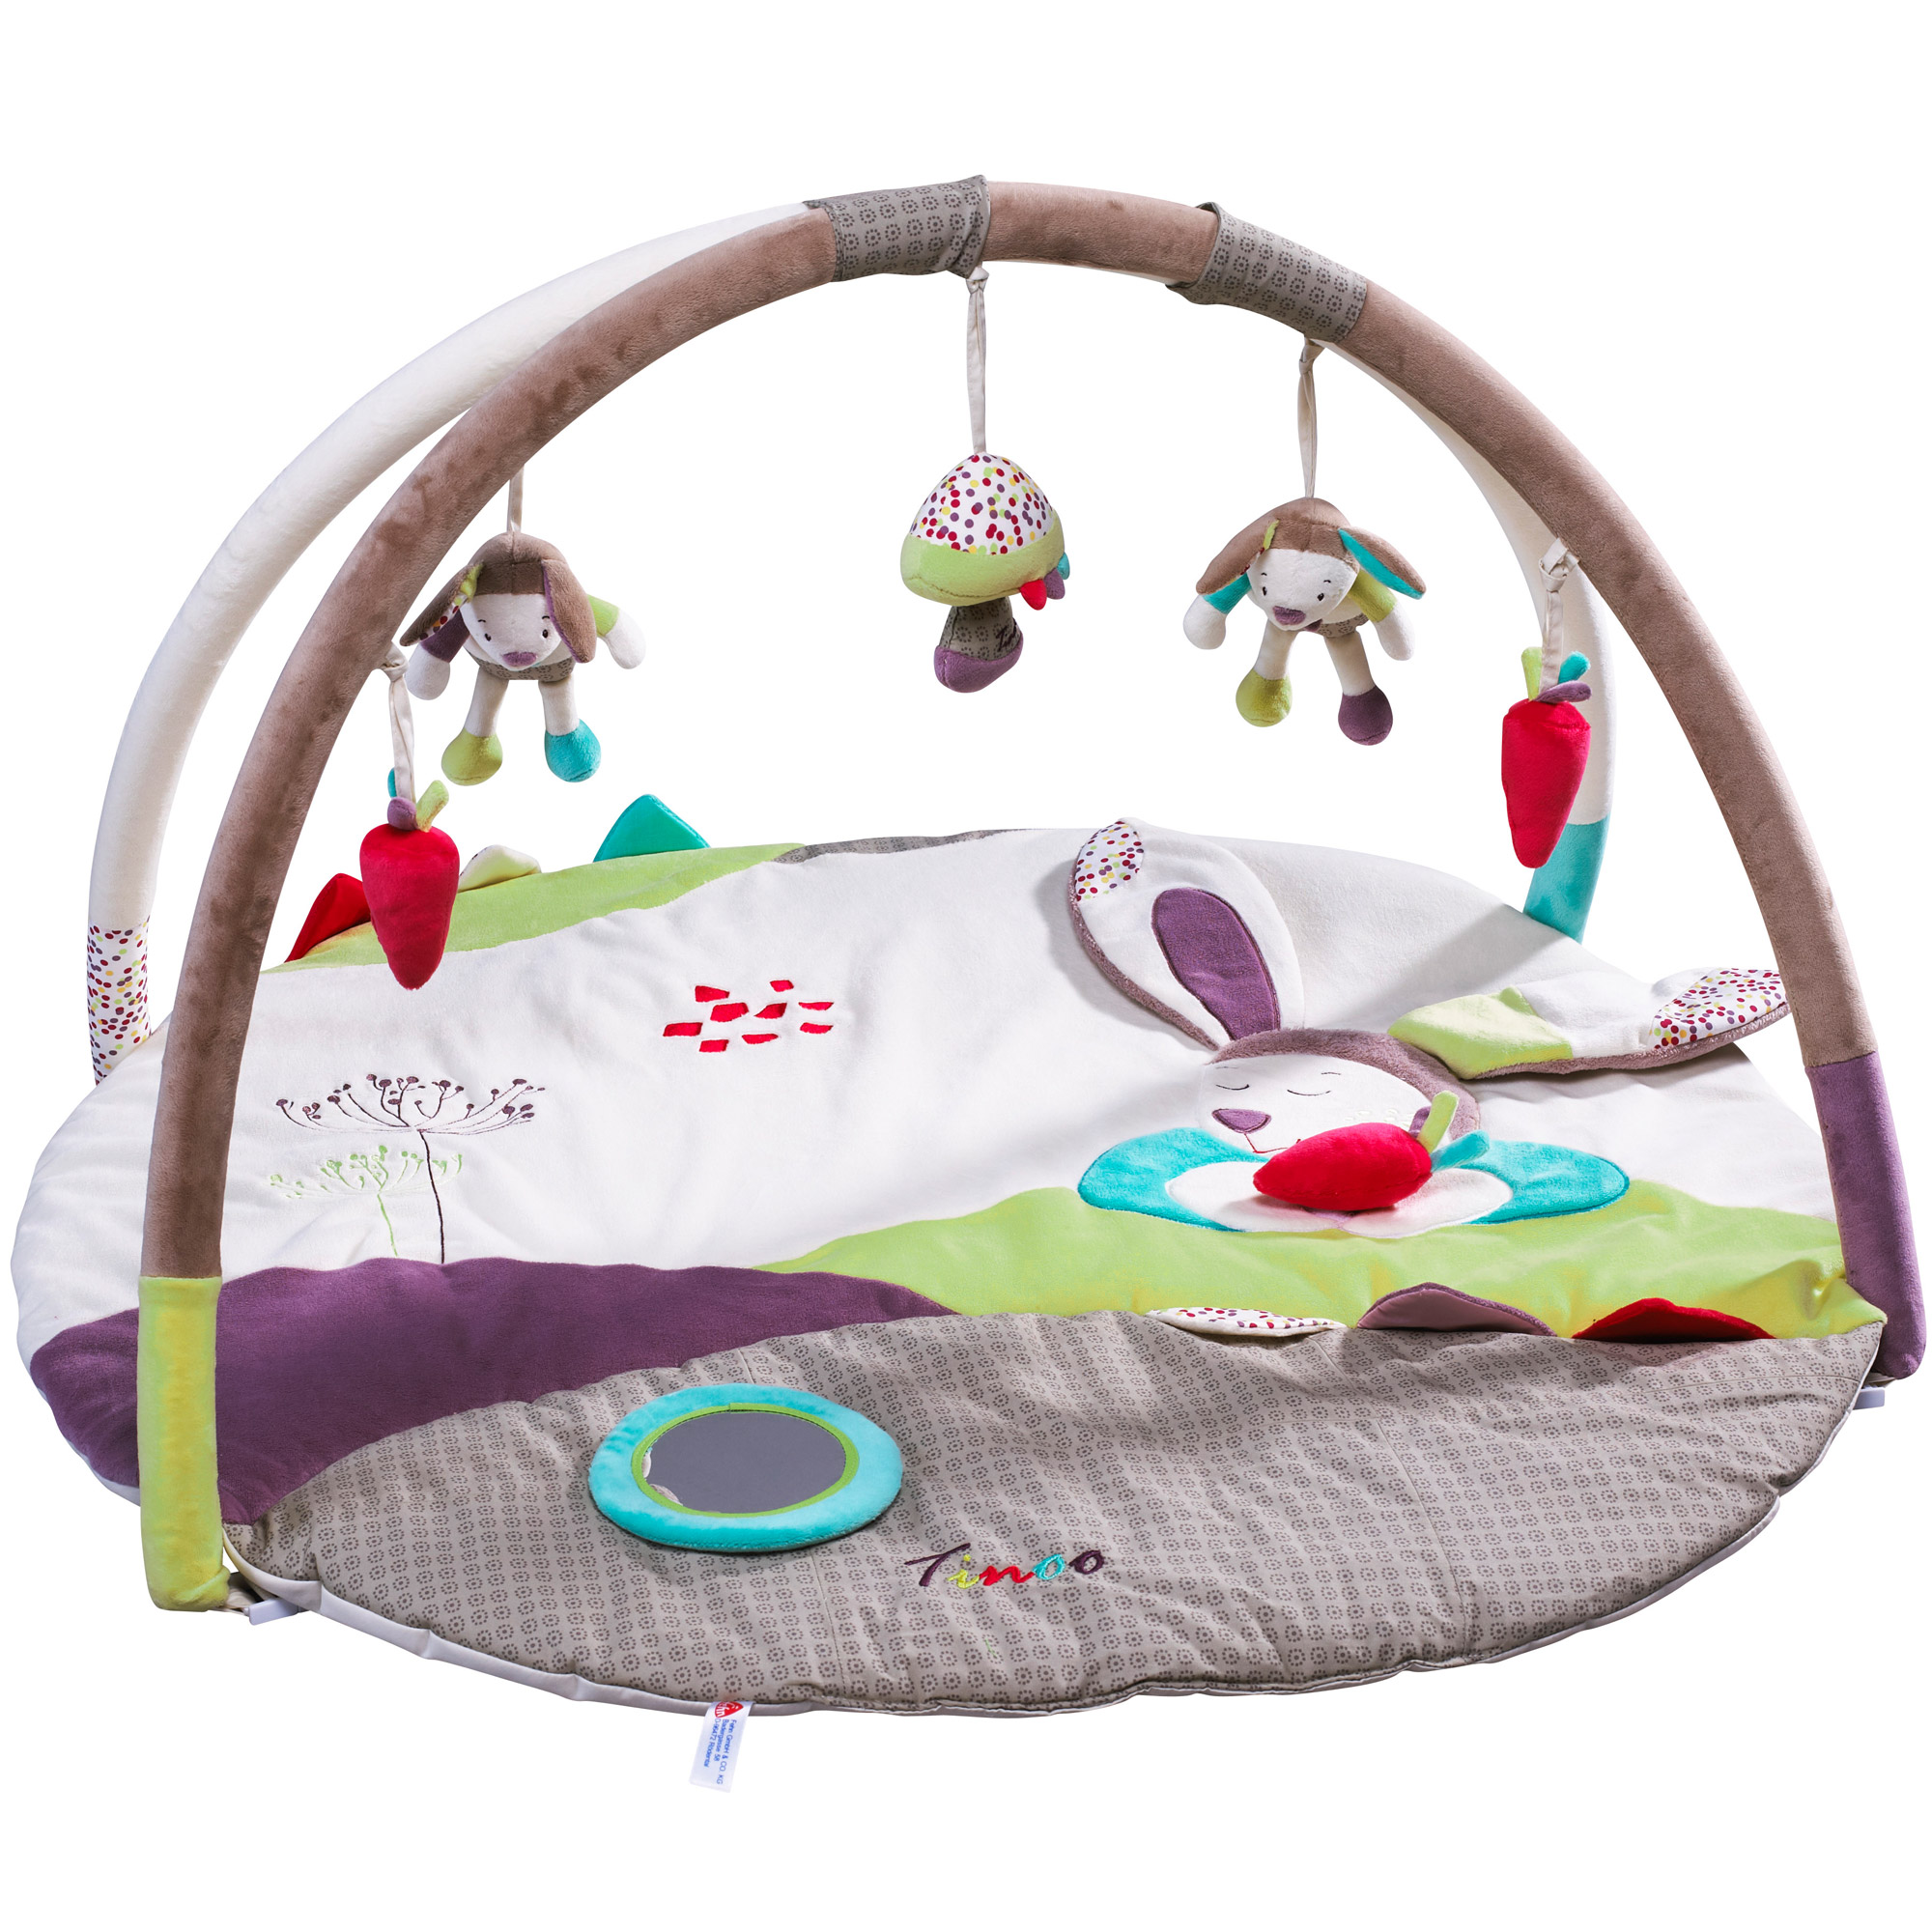 Tapis d'éveil bébé, achat de tapis de jeu pour bébé et enfant : Aubert